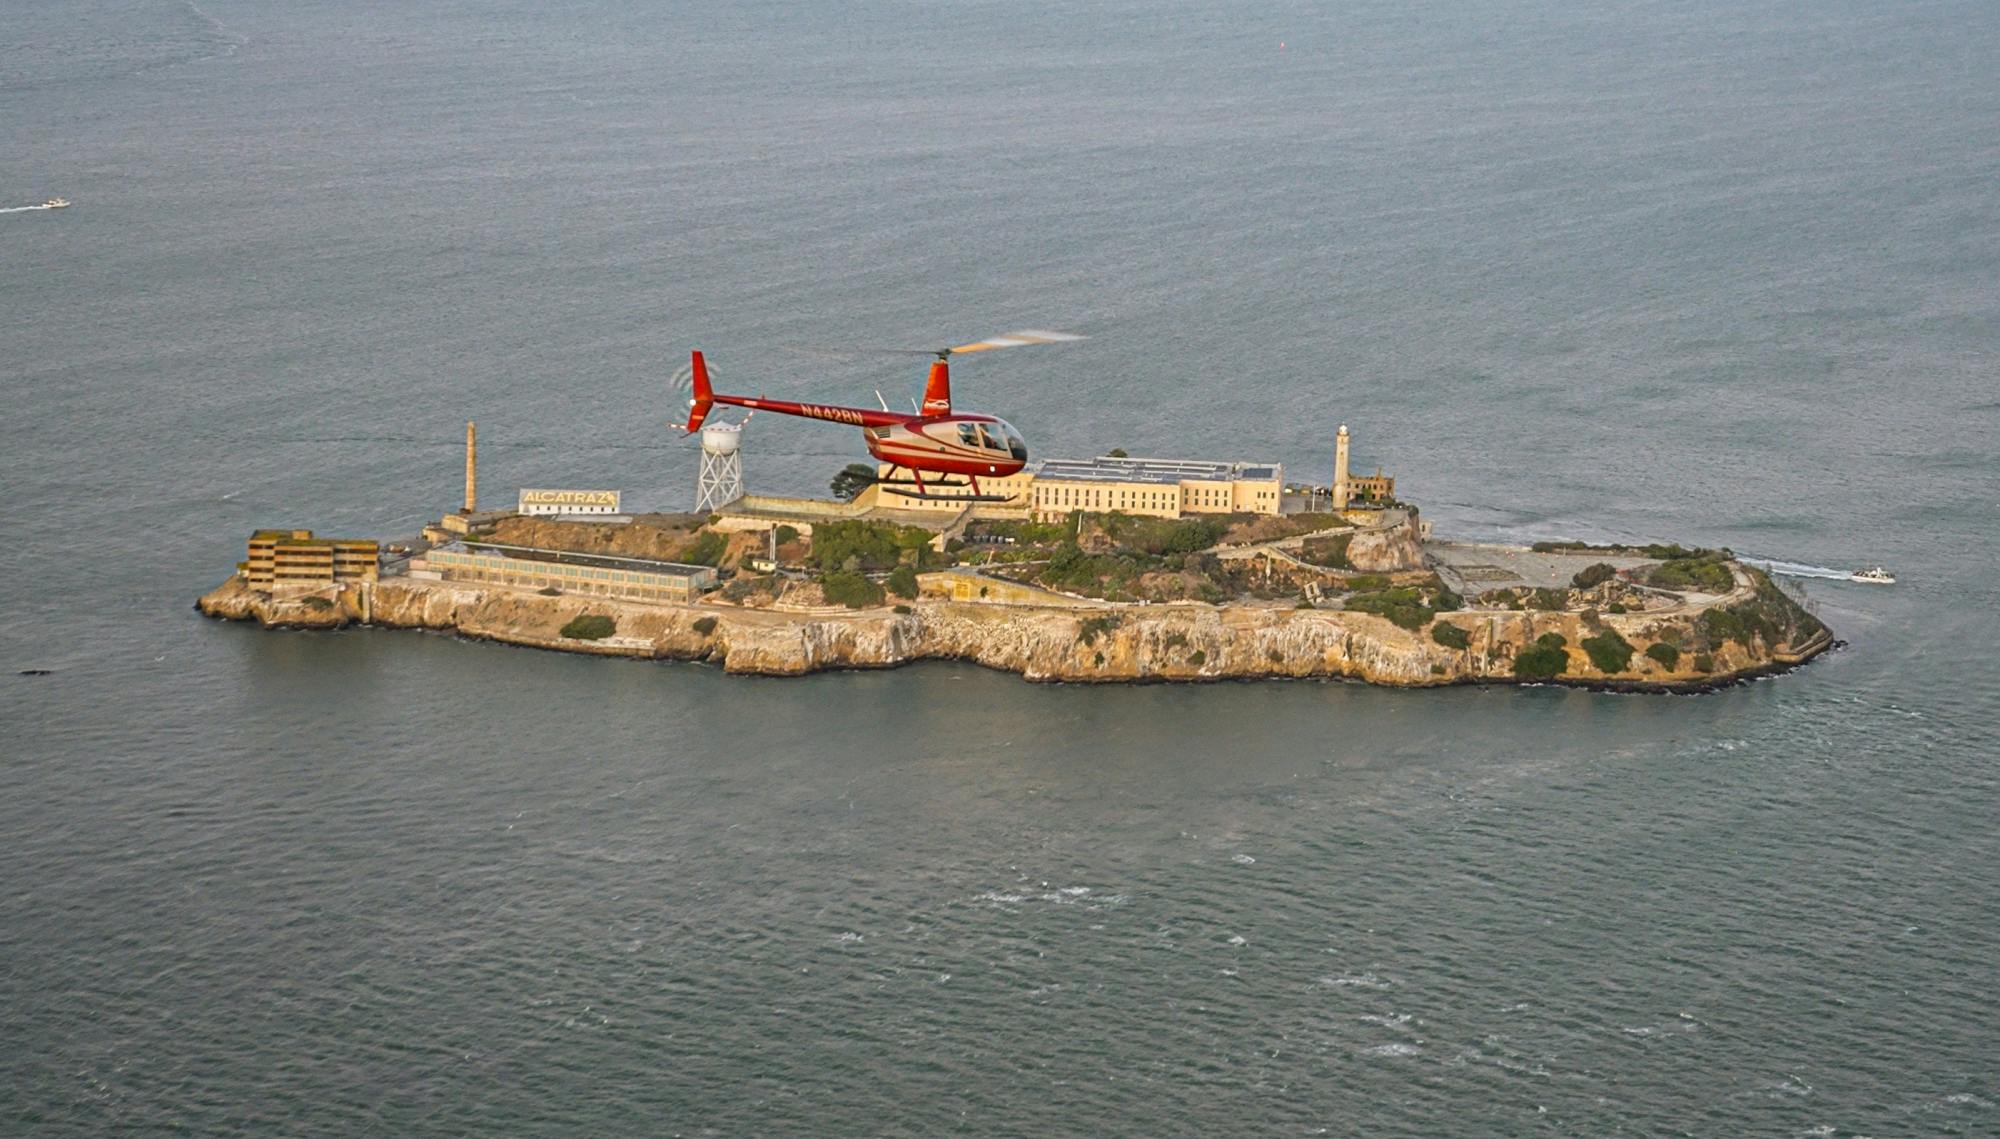 La città di Alcatraz mette in risalto il giro in elicottero